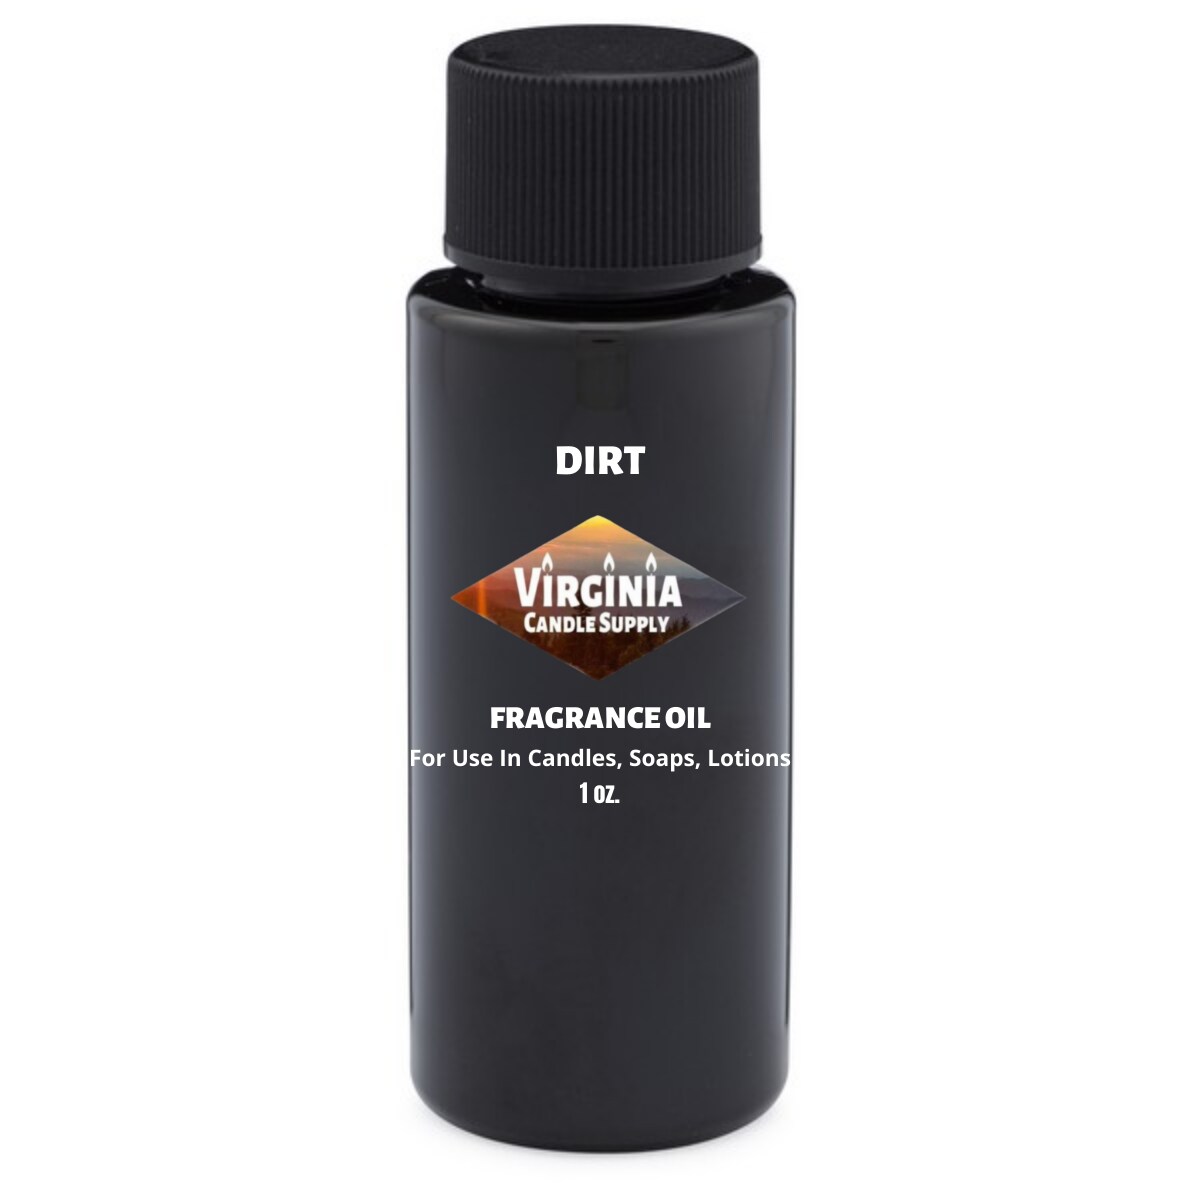 Dirt Fragrance Oil